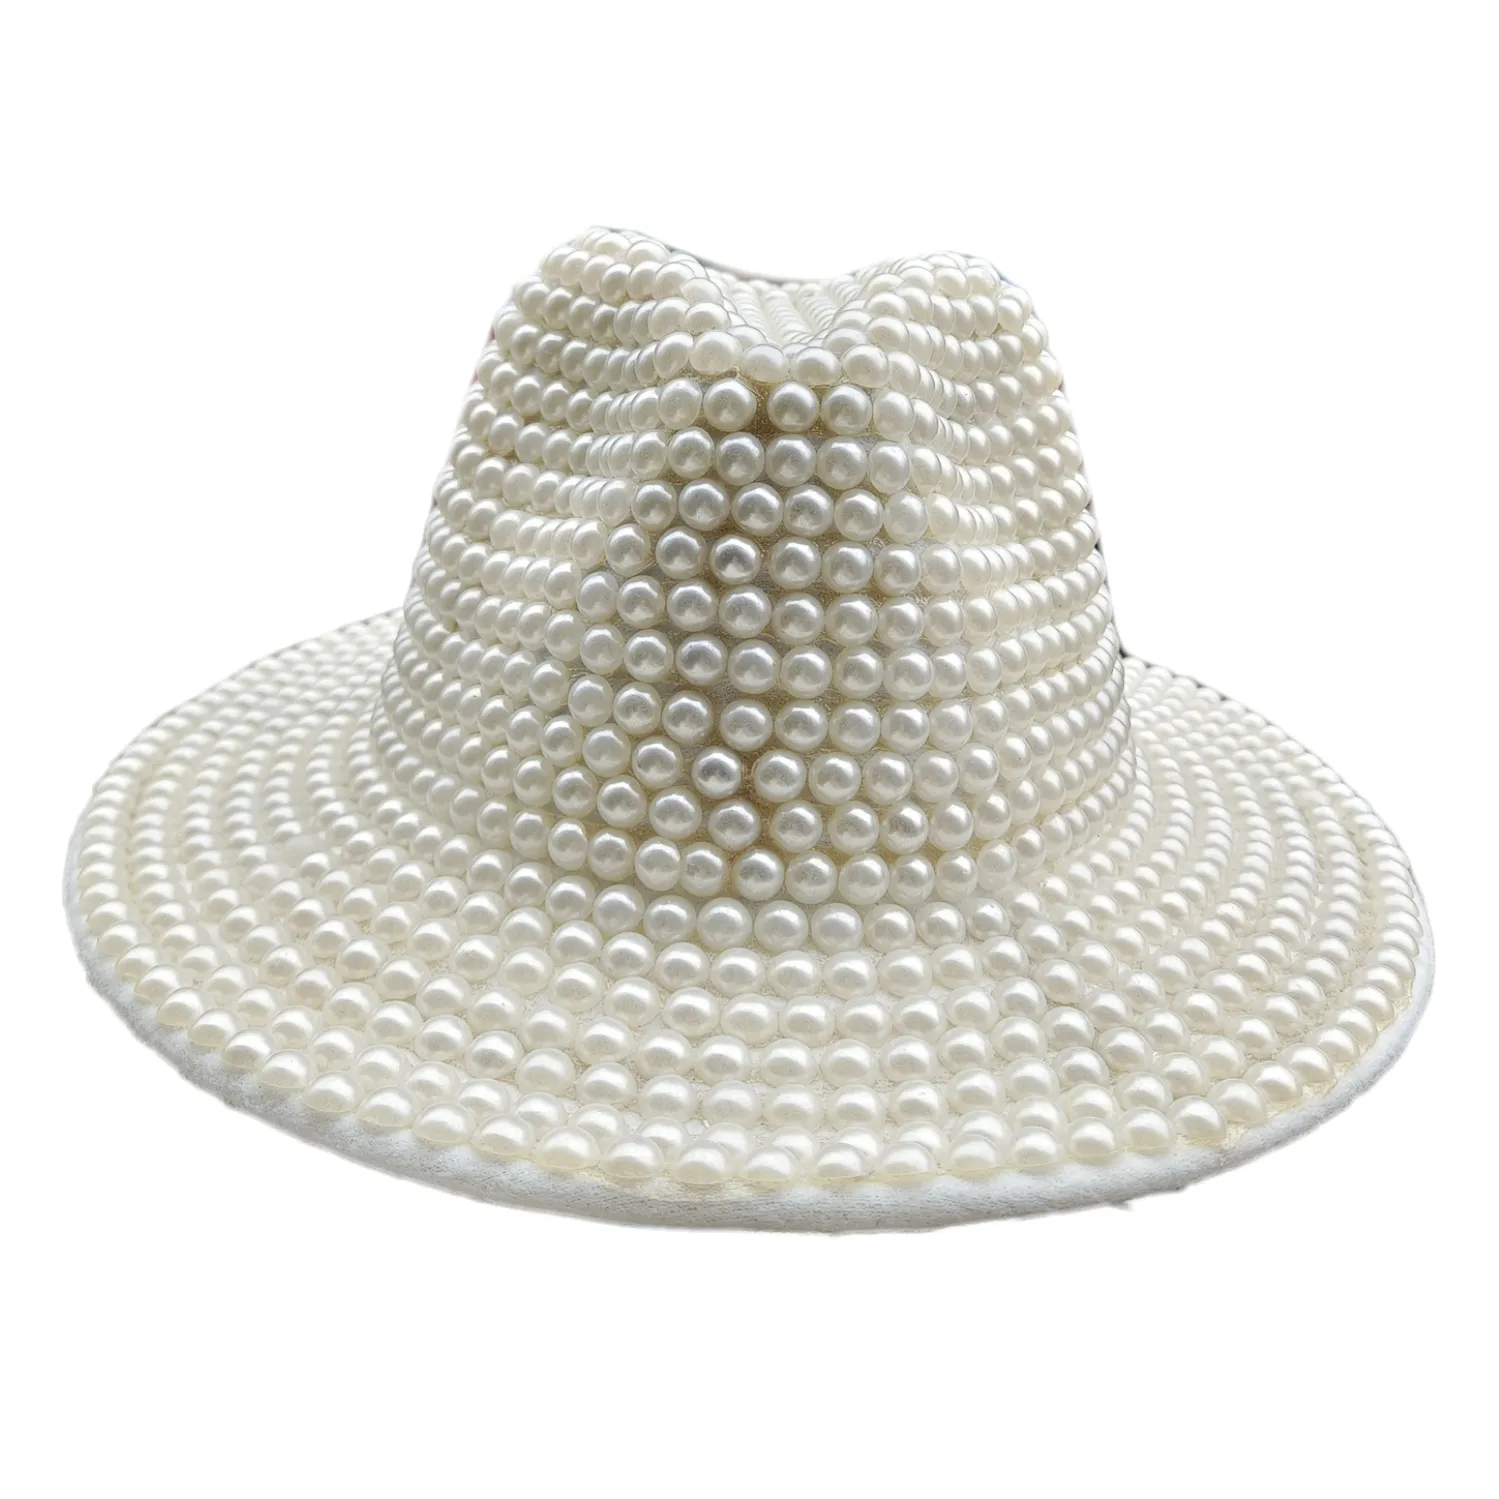 Nuovo cappello fashion chic da donna bianco fedora gentleman panama trilby jazz cappelli fedora con perle